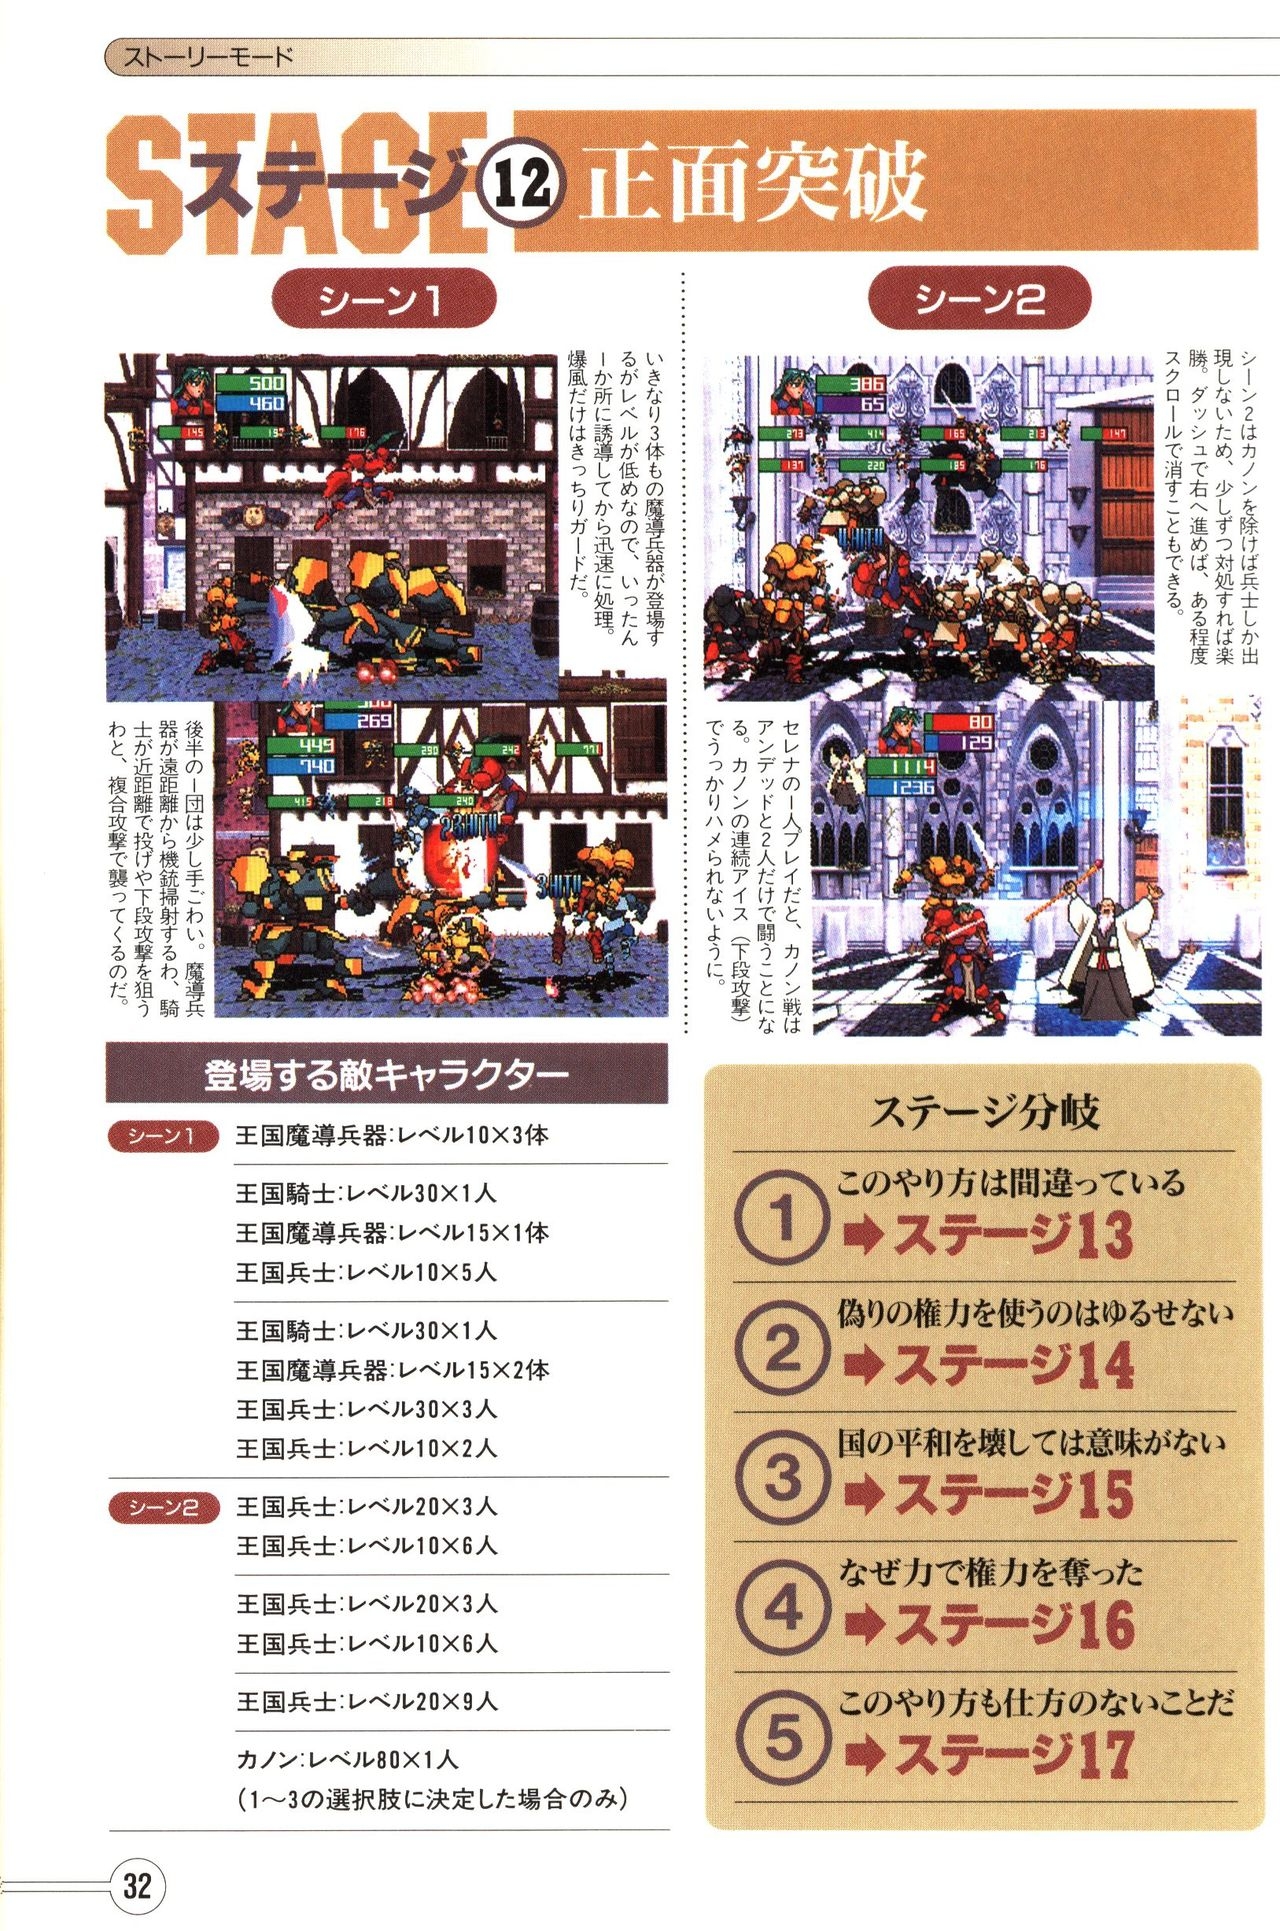 Guardian Heroes Perfect Guide (Sega Saturn magazine books) 34